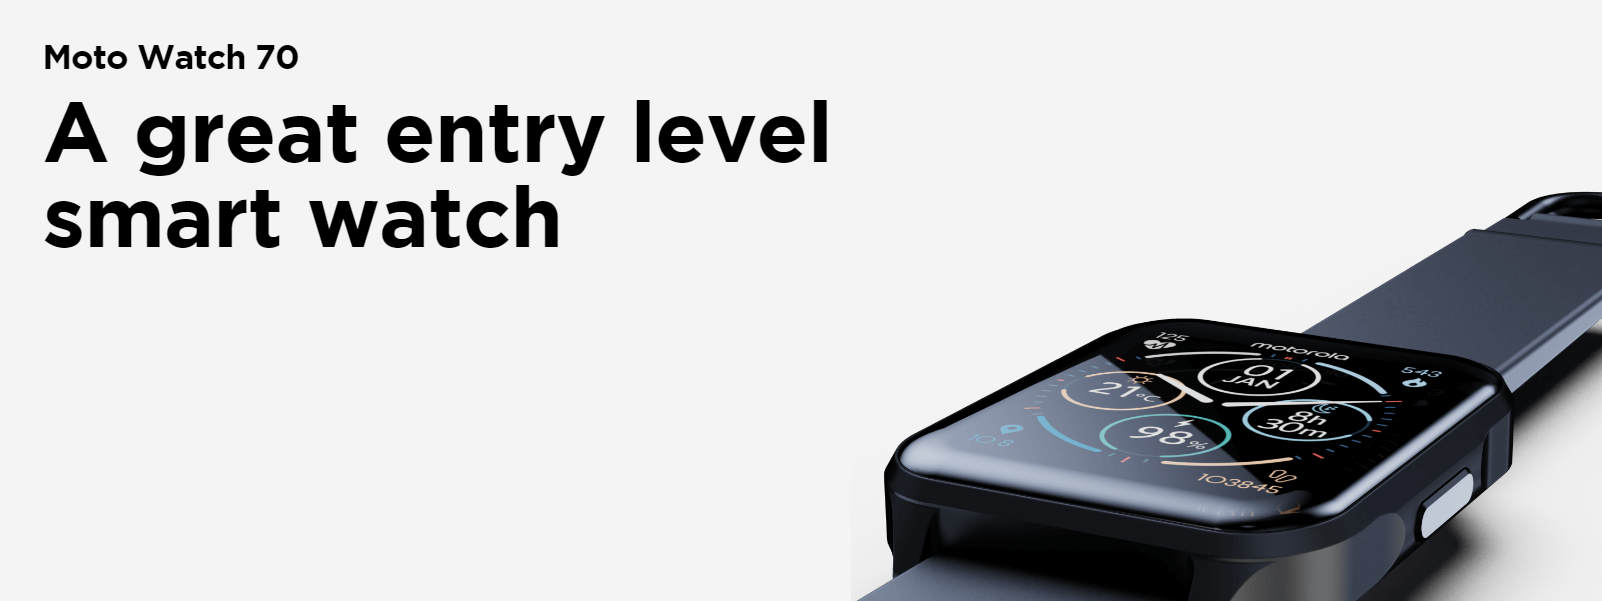 Motorola анонсувала смарт-годинник Moto Watch 70 із захистом IP67 і сенсором температури